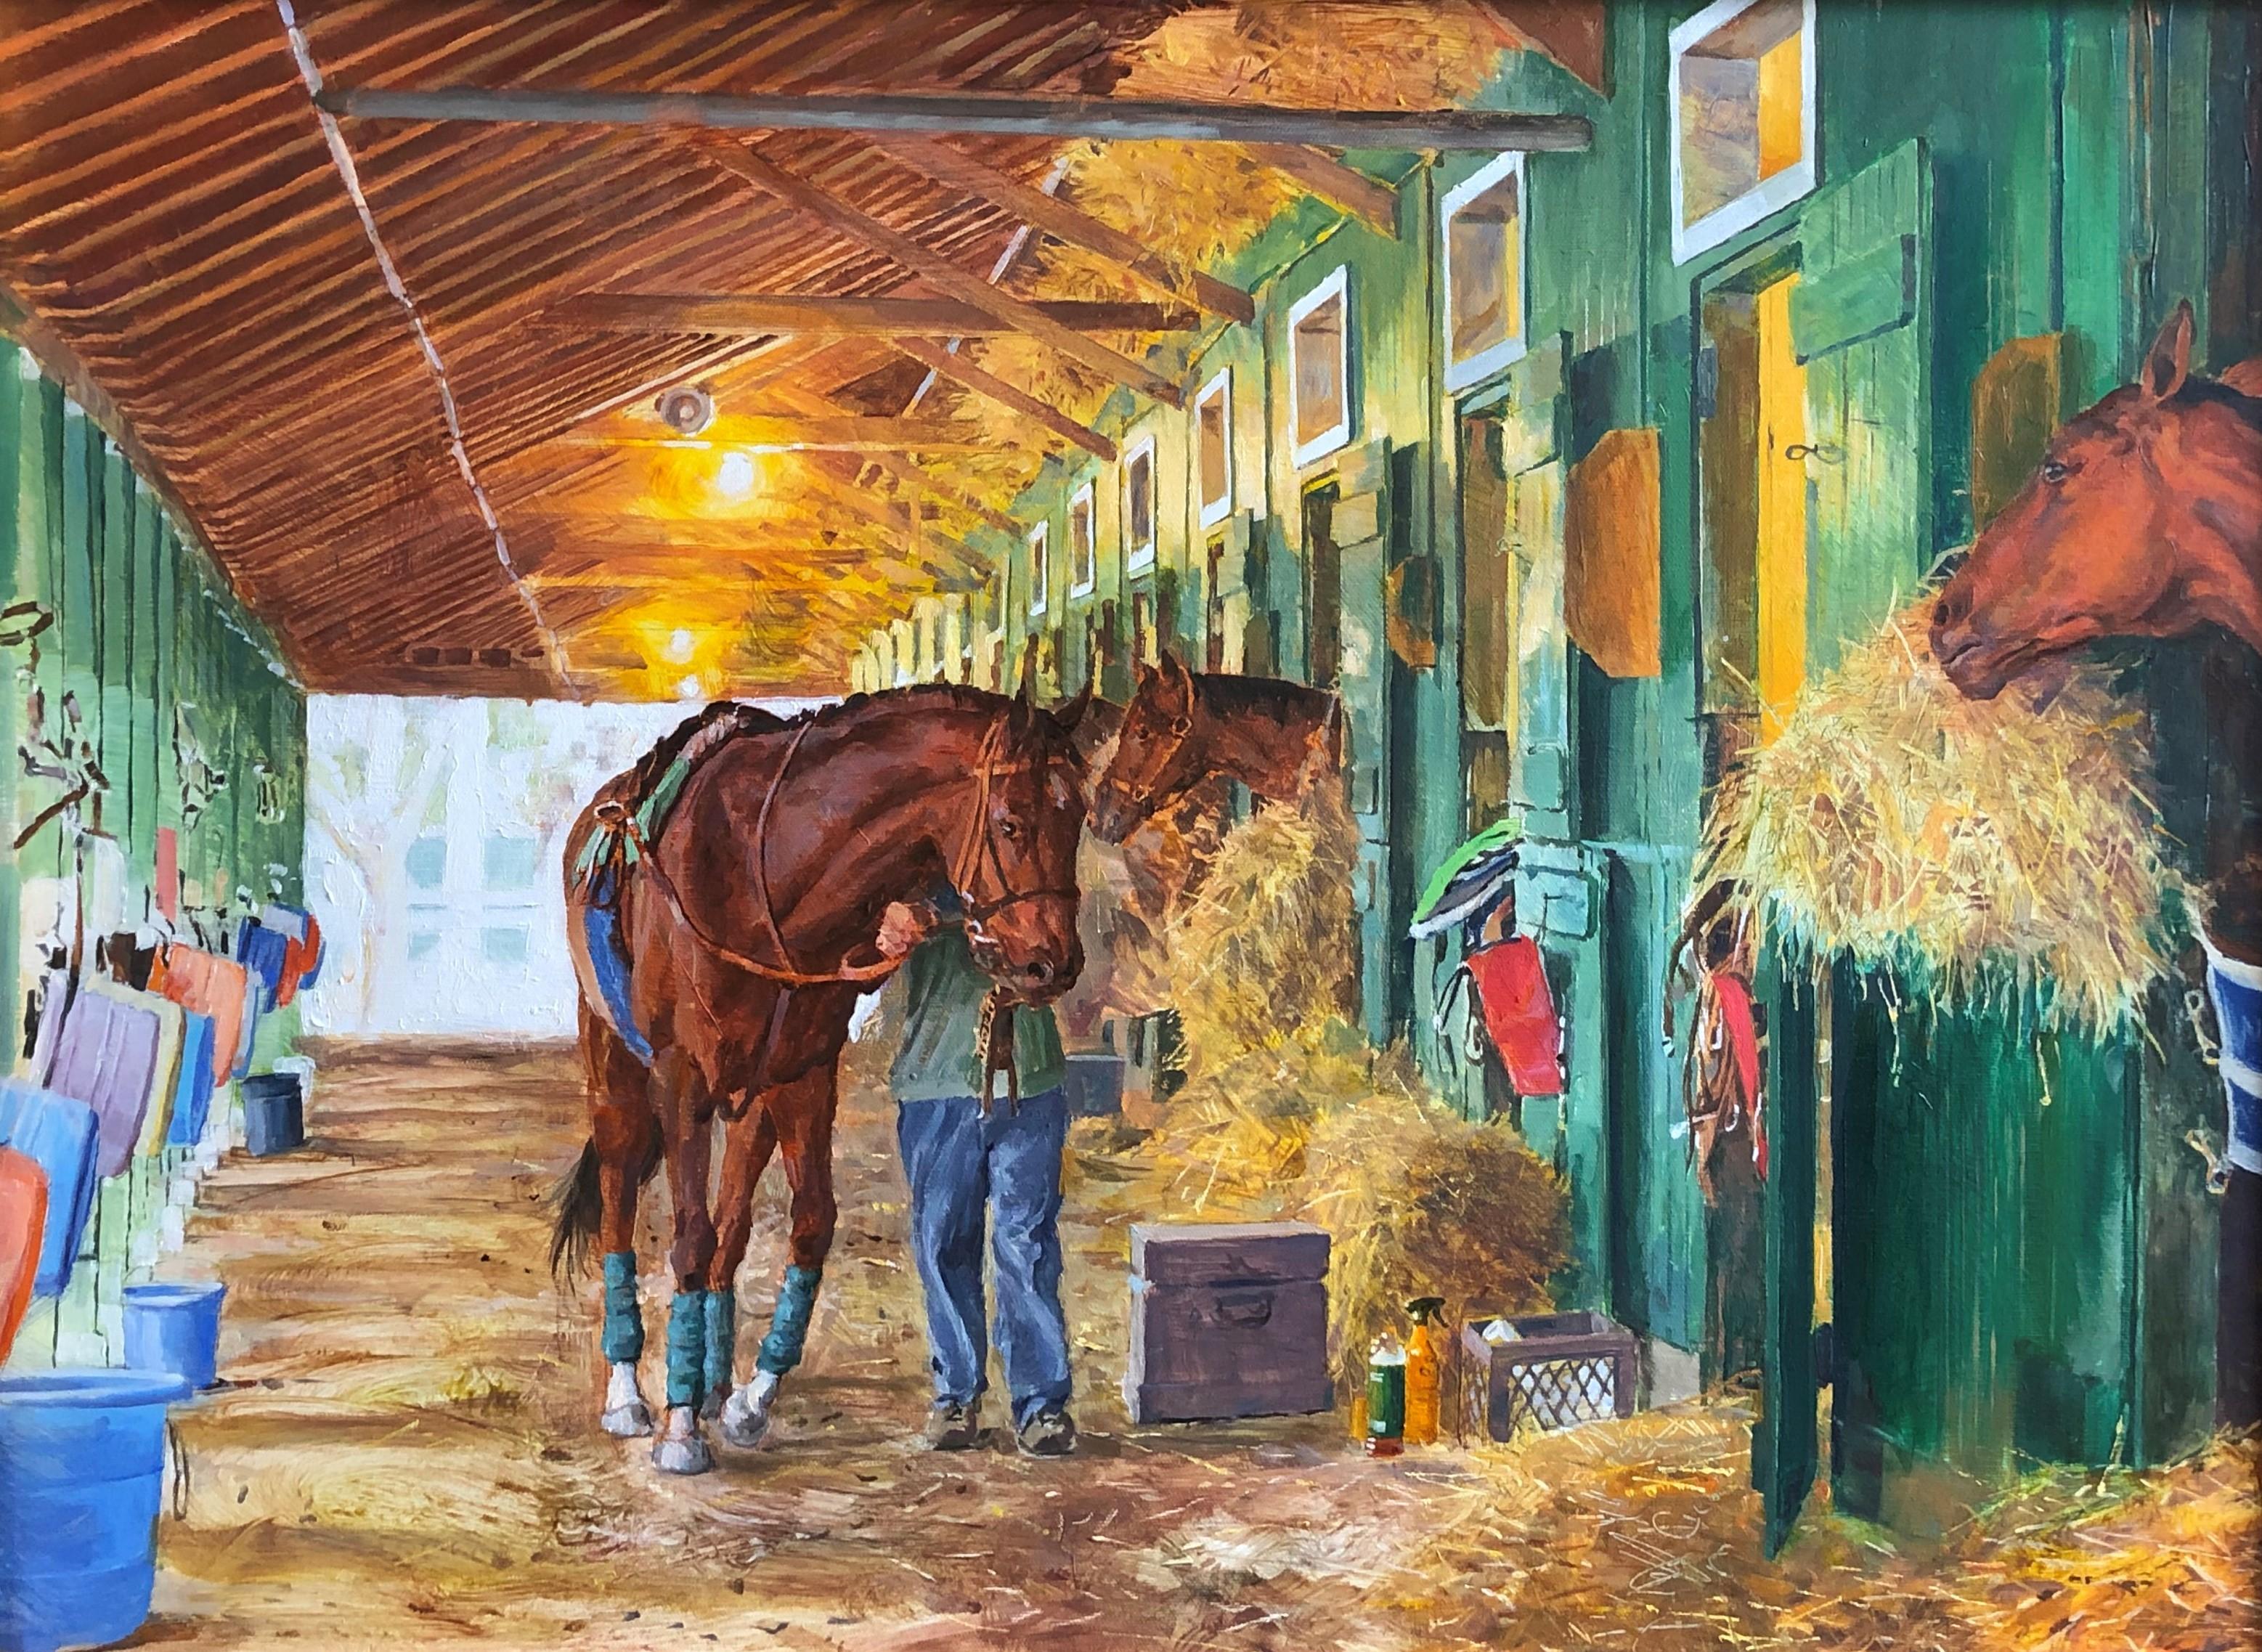 Dieses Werk, "Walking in the Stable", des Künstlers Dahl Taylor ist ein 22x30 großes Ölgemälde auf Leinwand  die das Innere der Ställe hinter der berühmten Rennbahn von Saratoga Springs zeigt. Zwei Pferde ruhen in ihren Boxen, während ein Pferd auf